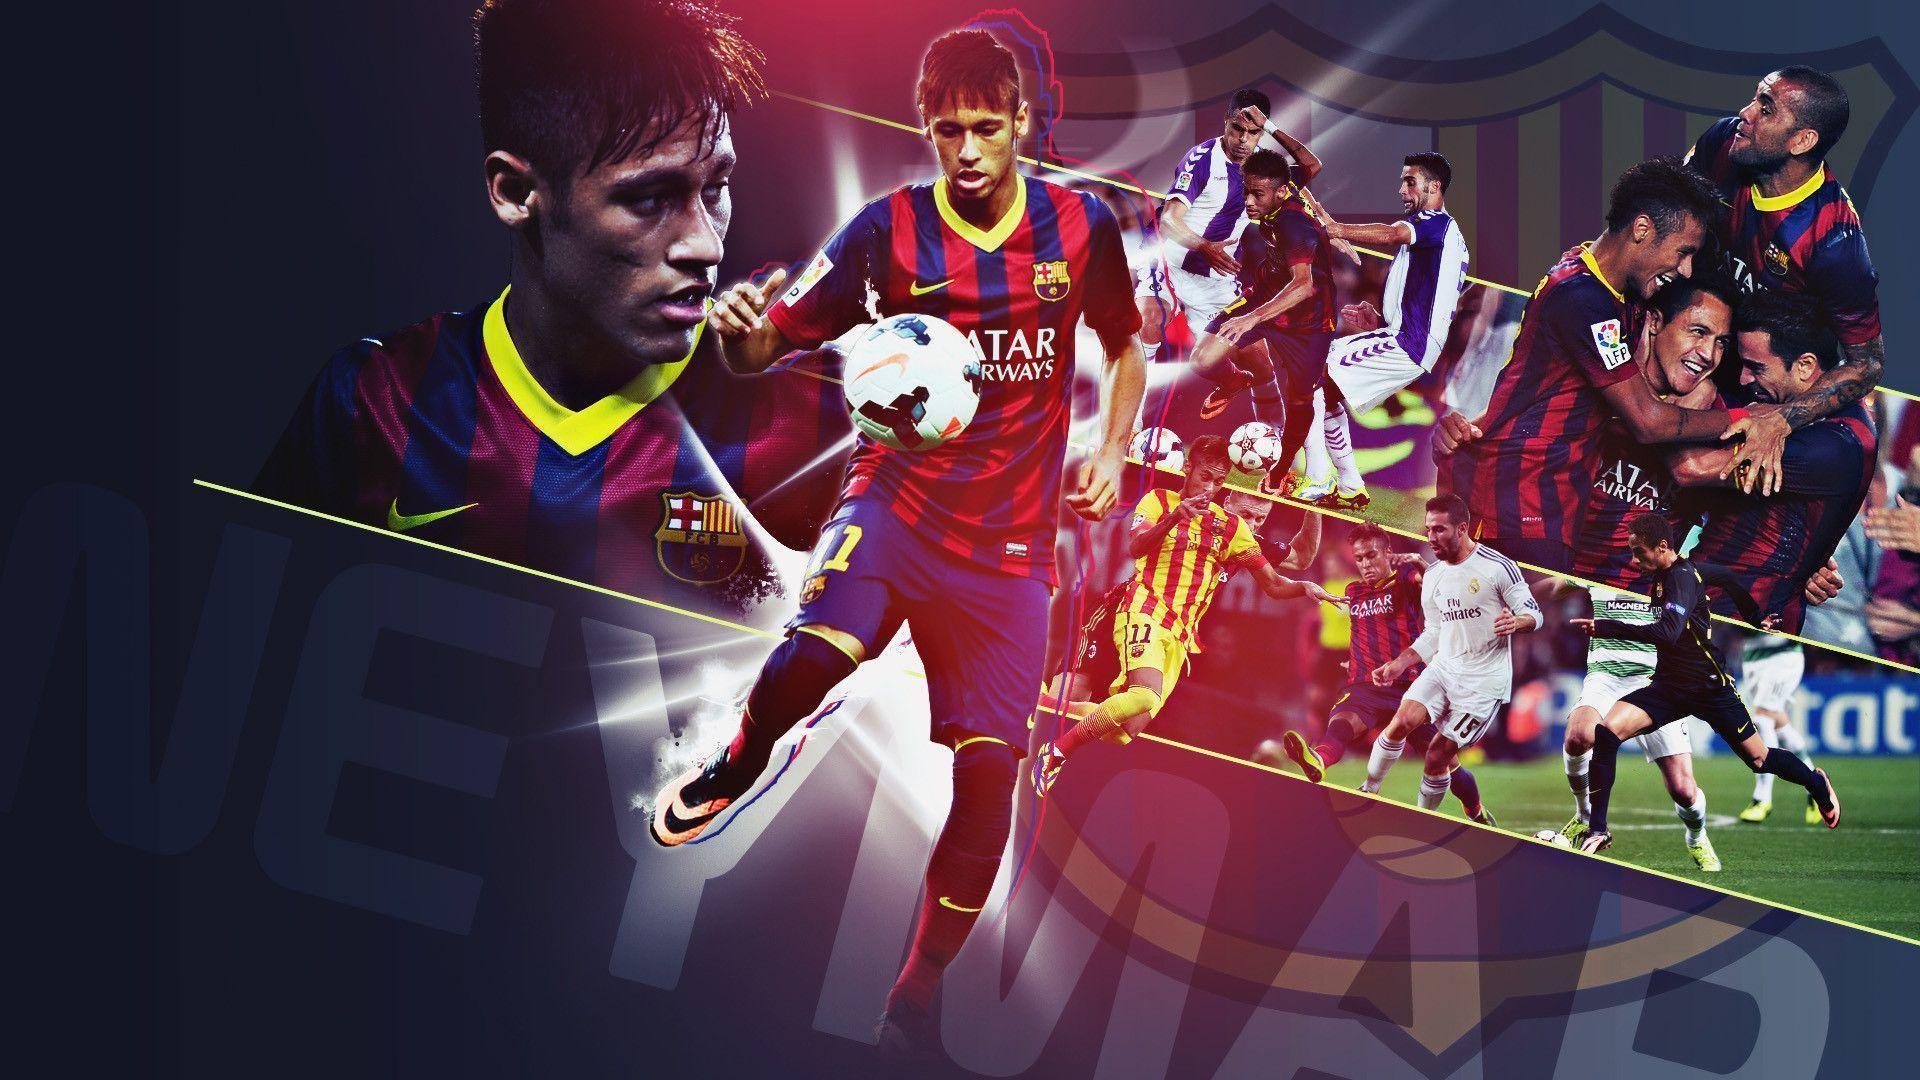 Neymar JR FC Barcelona 2014 Wallpaper Wide or HD. Male